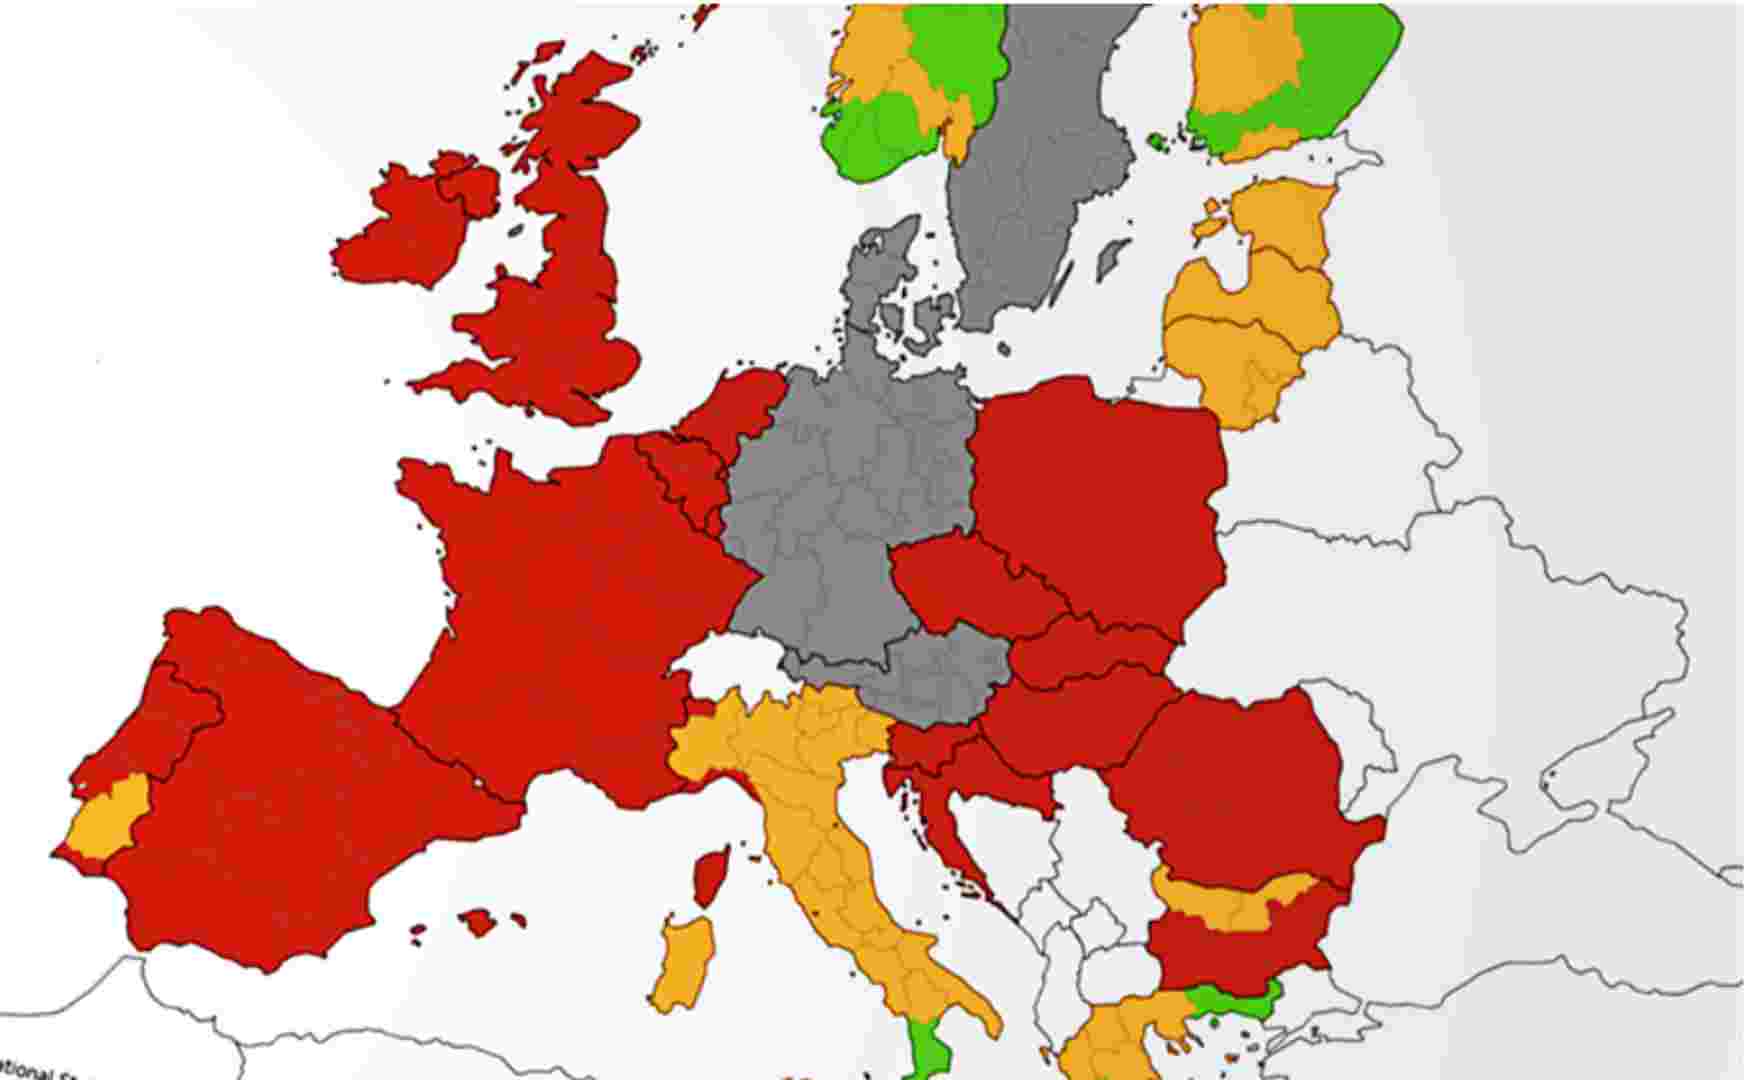 Objavljena karta za ograničenje kretanja: Više od pola Europe u crvenoj zoni, samo tri zemlje zelene